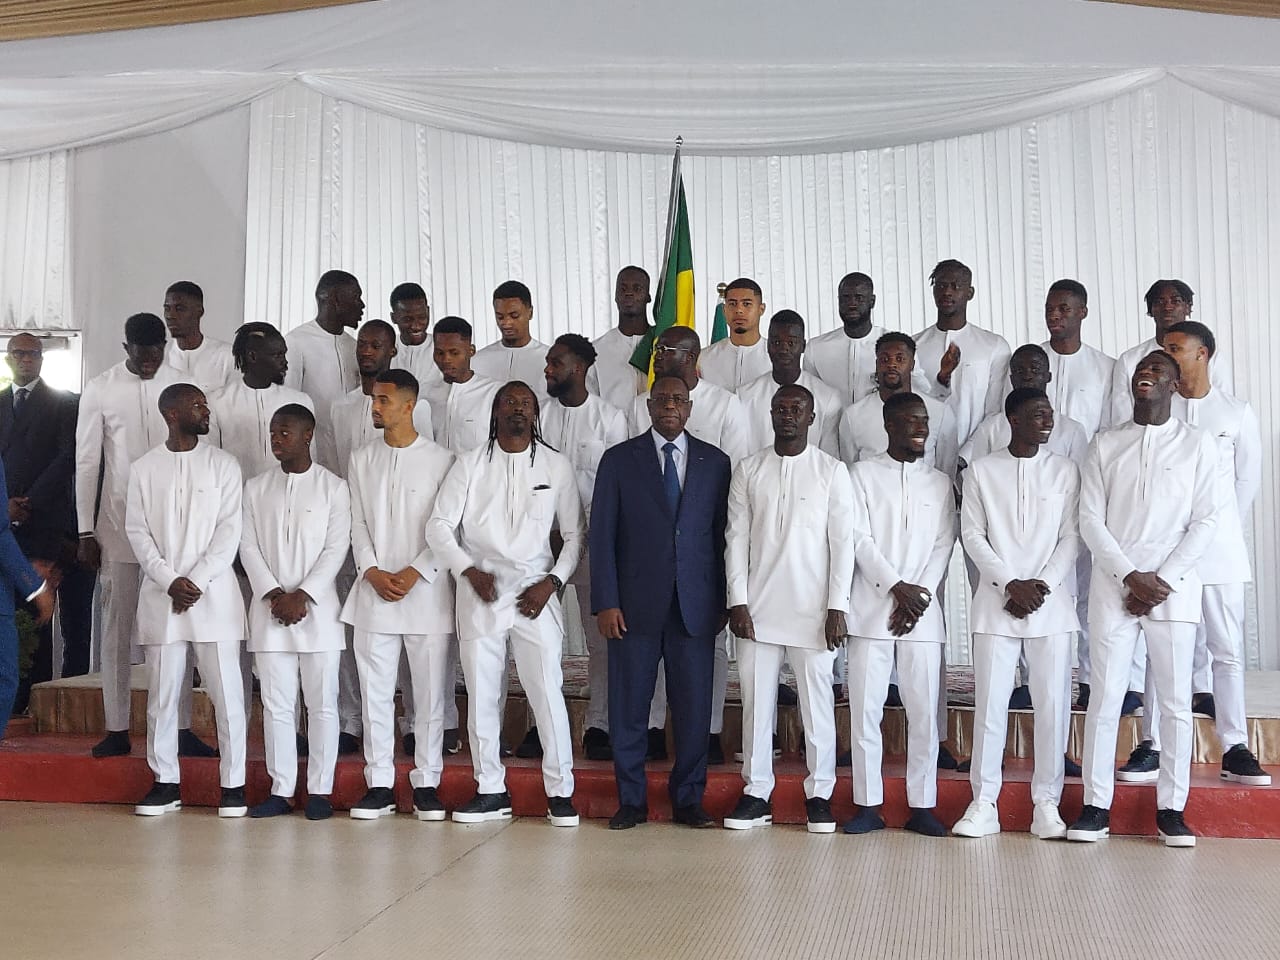 Le Président Macky Sall aux « Lions » : « Nous n’attendons pas moyen qu’une deuxième étoile »